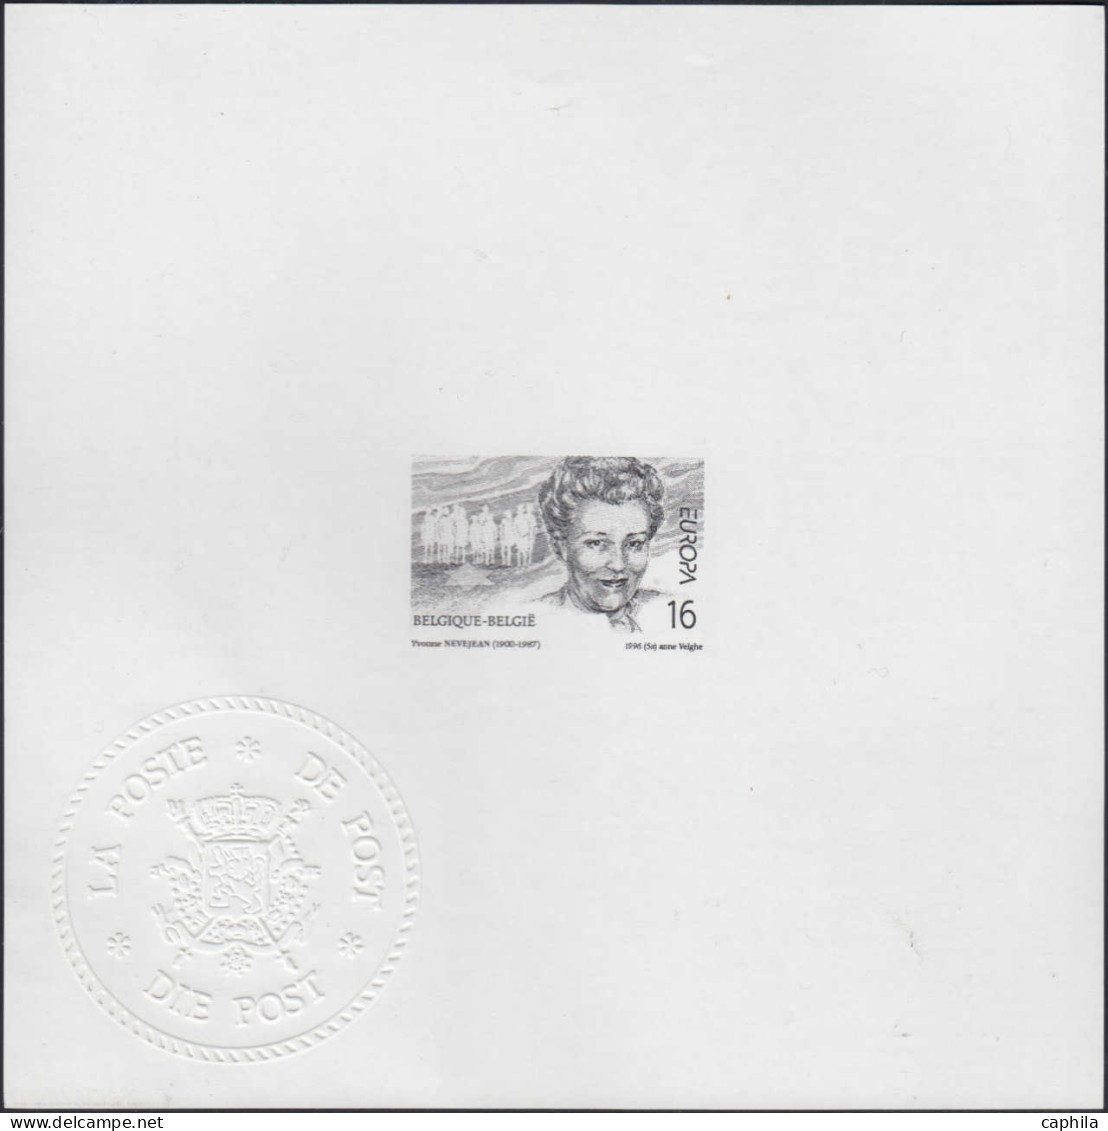 - BELGIQUE FEUILLETS MINISTERIELS, 1953/2007 (type MV/FM), en album, cote COB: 12200 €